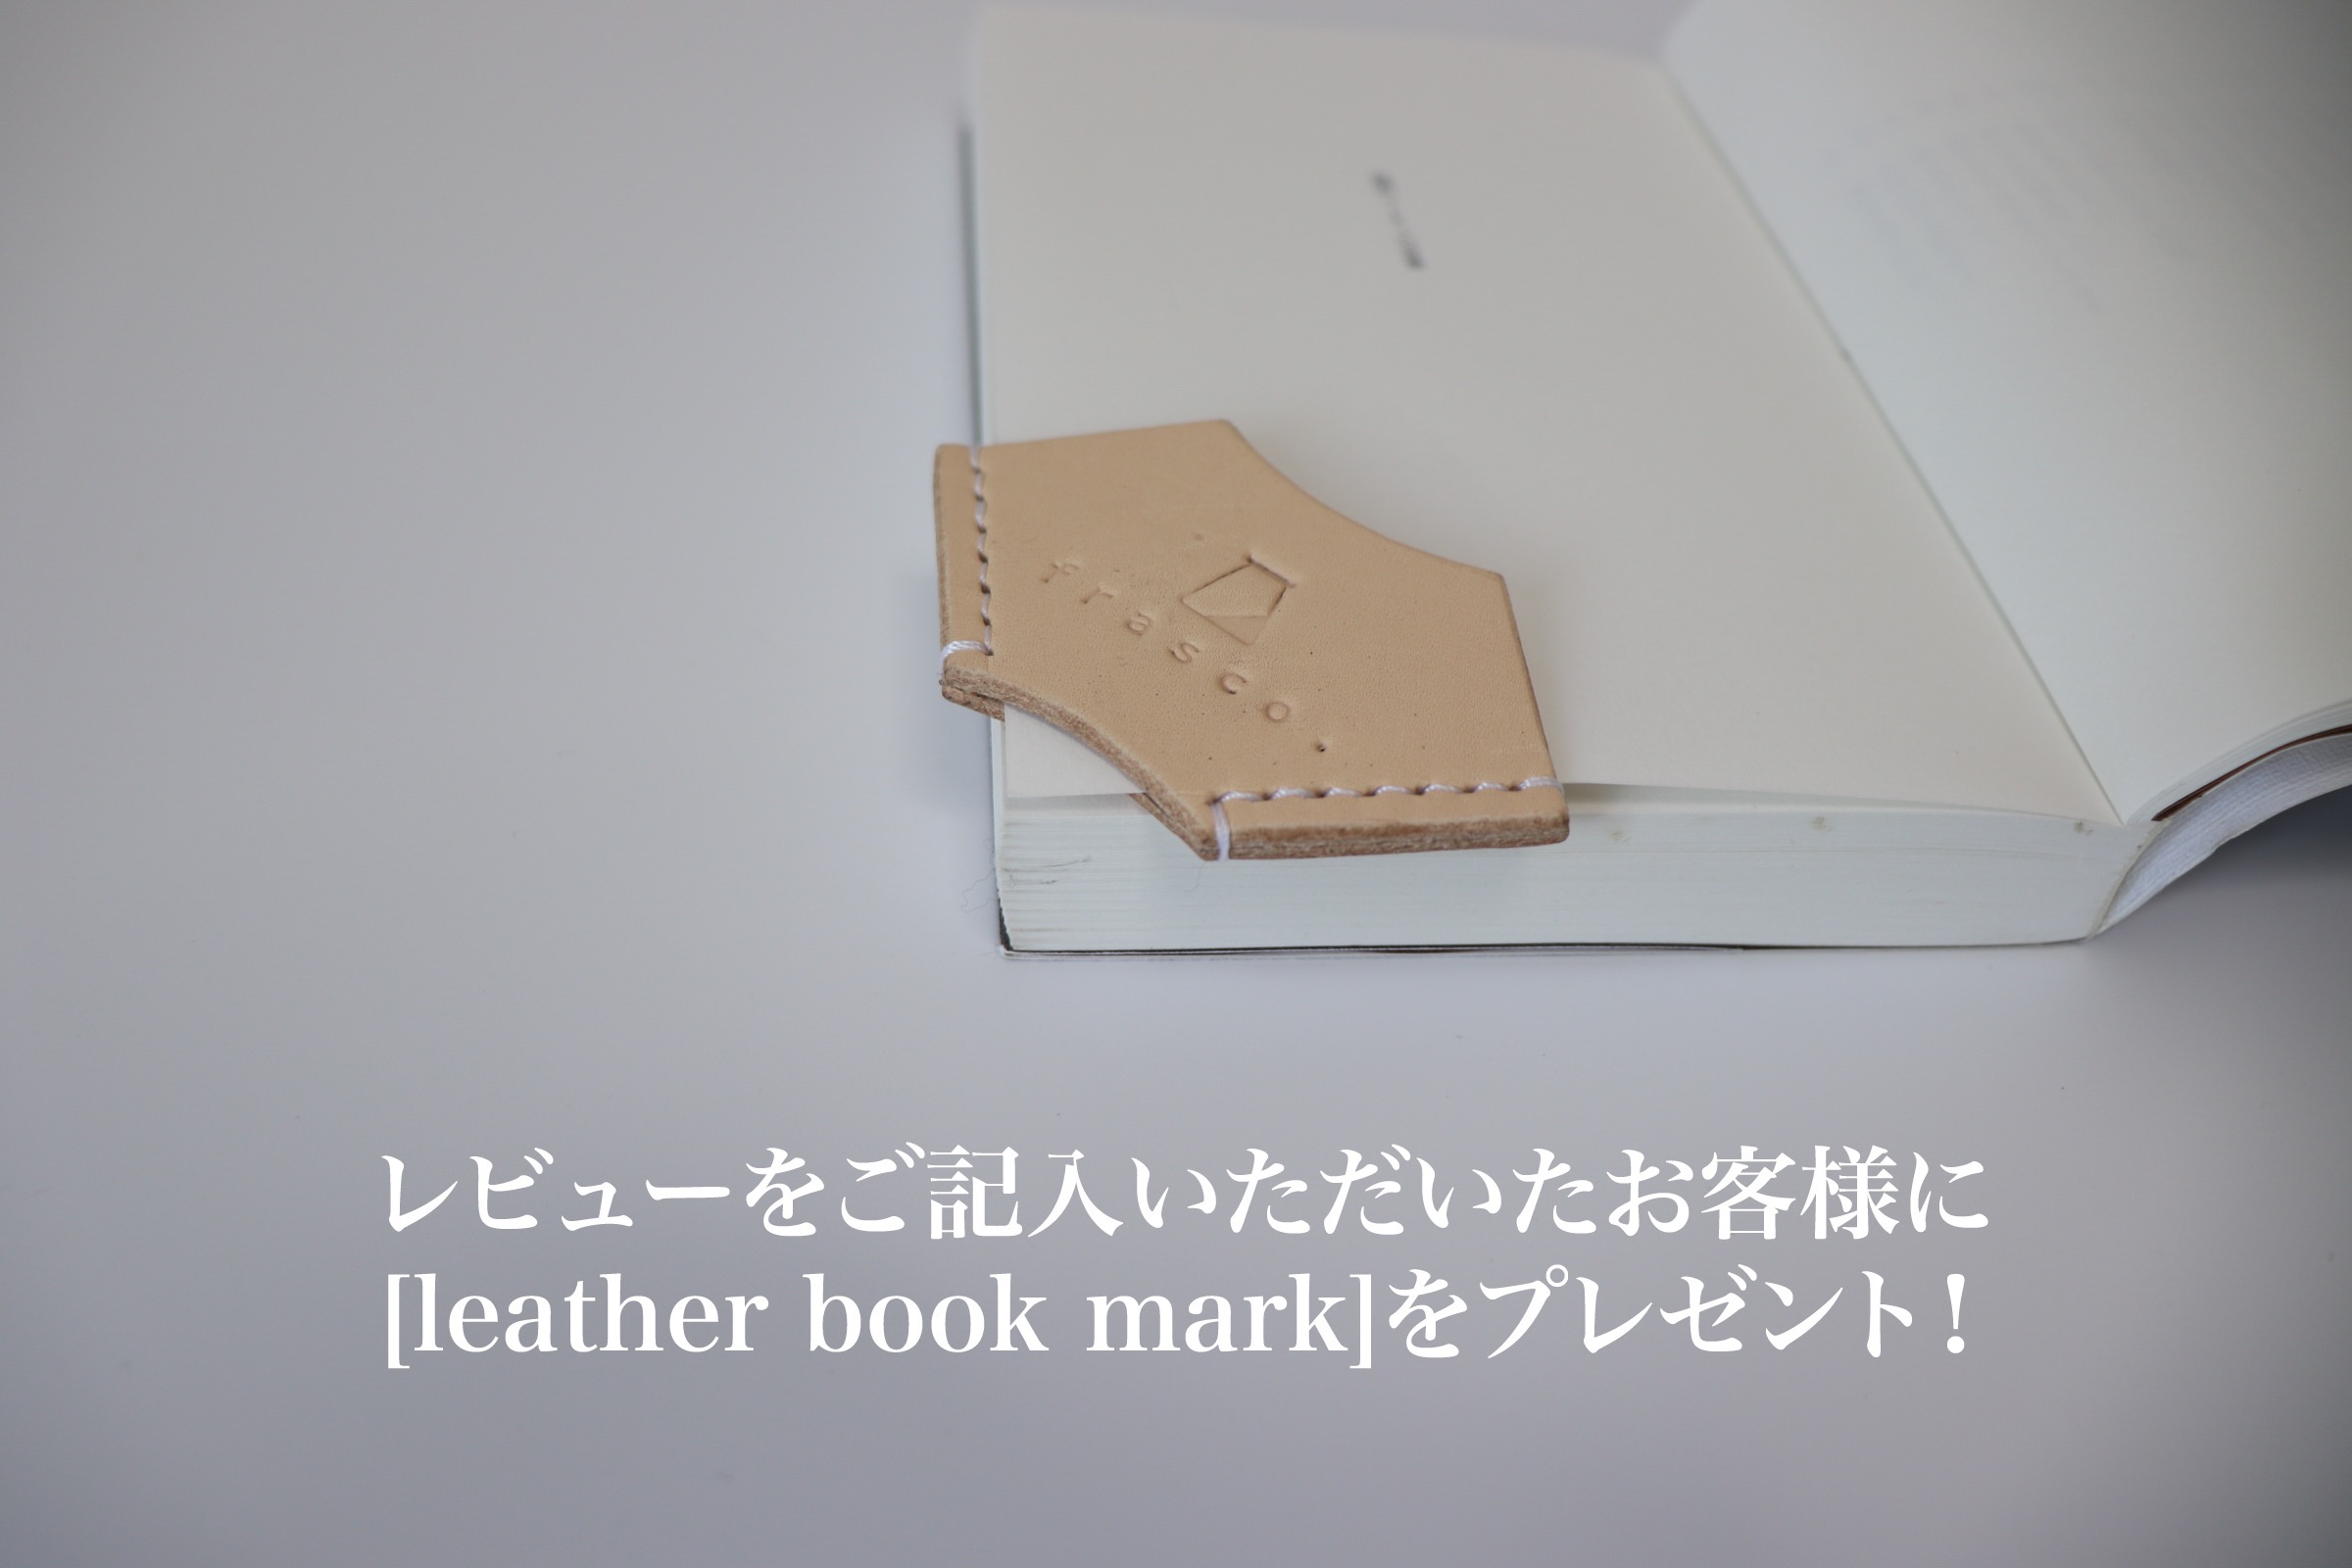 レビューをご記入いただいたお客様へ【leather book mark】をプレゼント。